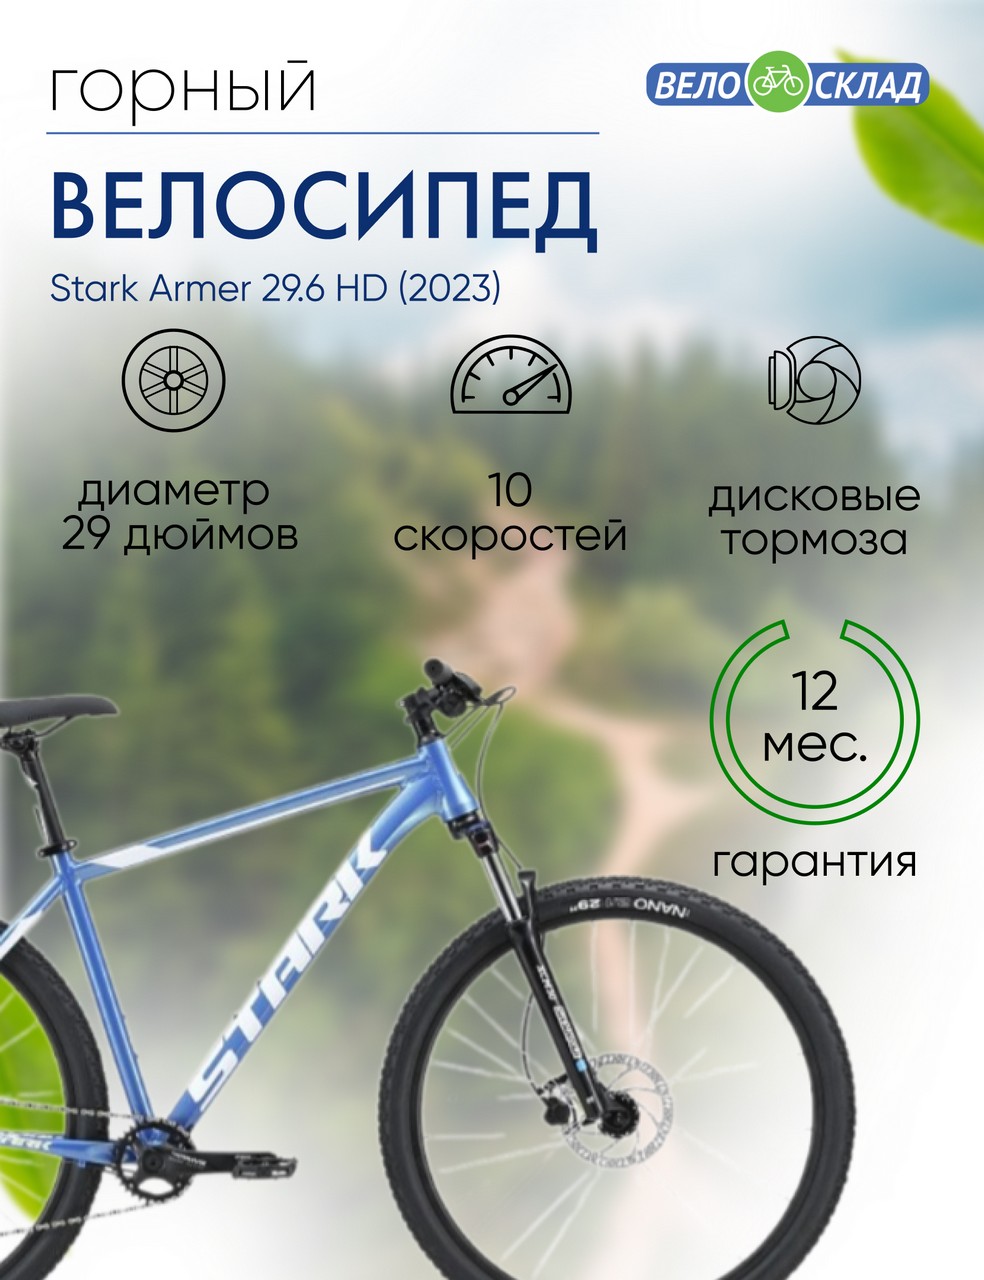 Горный велосипед Stark Armer 29.6 HD, год 2023, цвет Голубой-Белый, ростовка 22